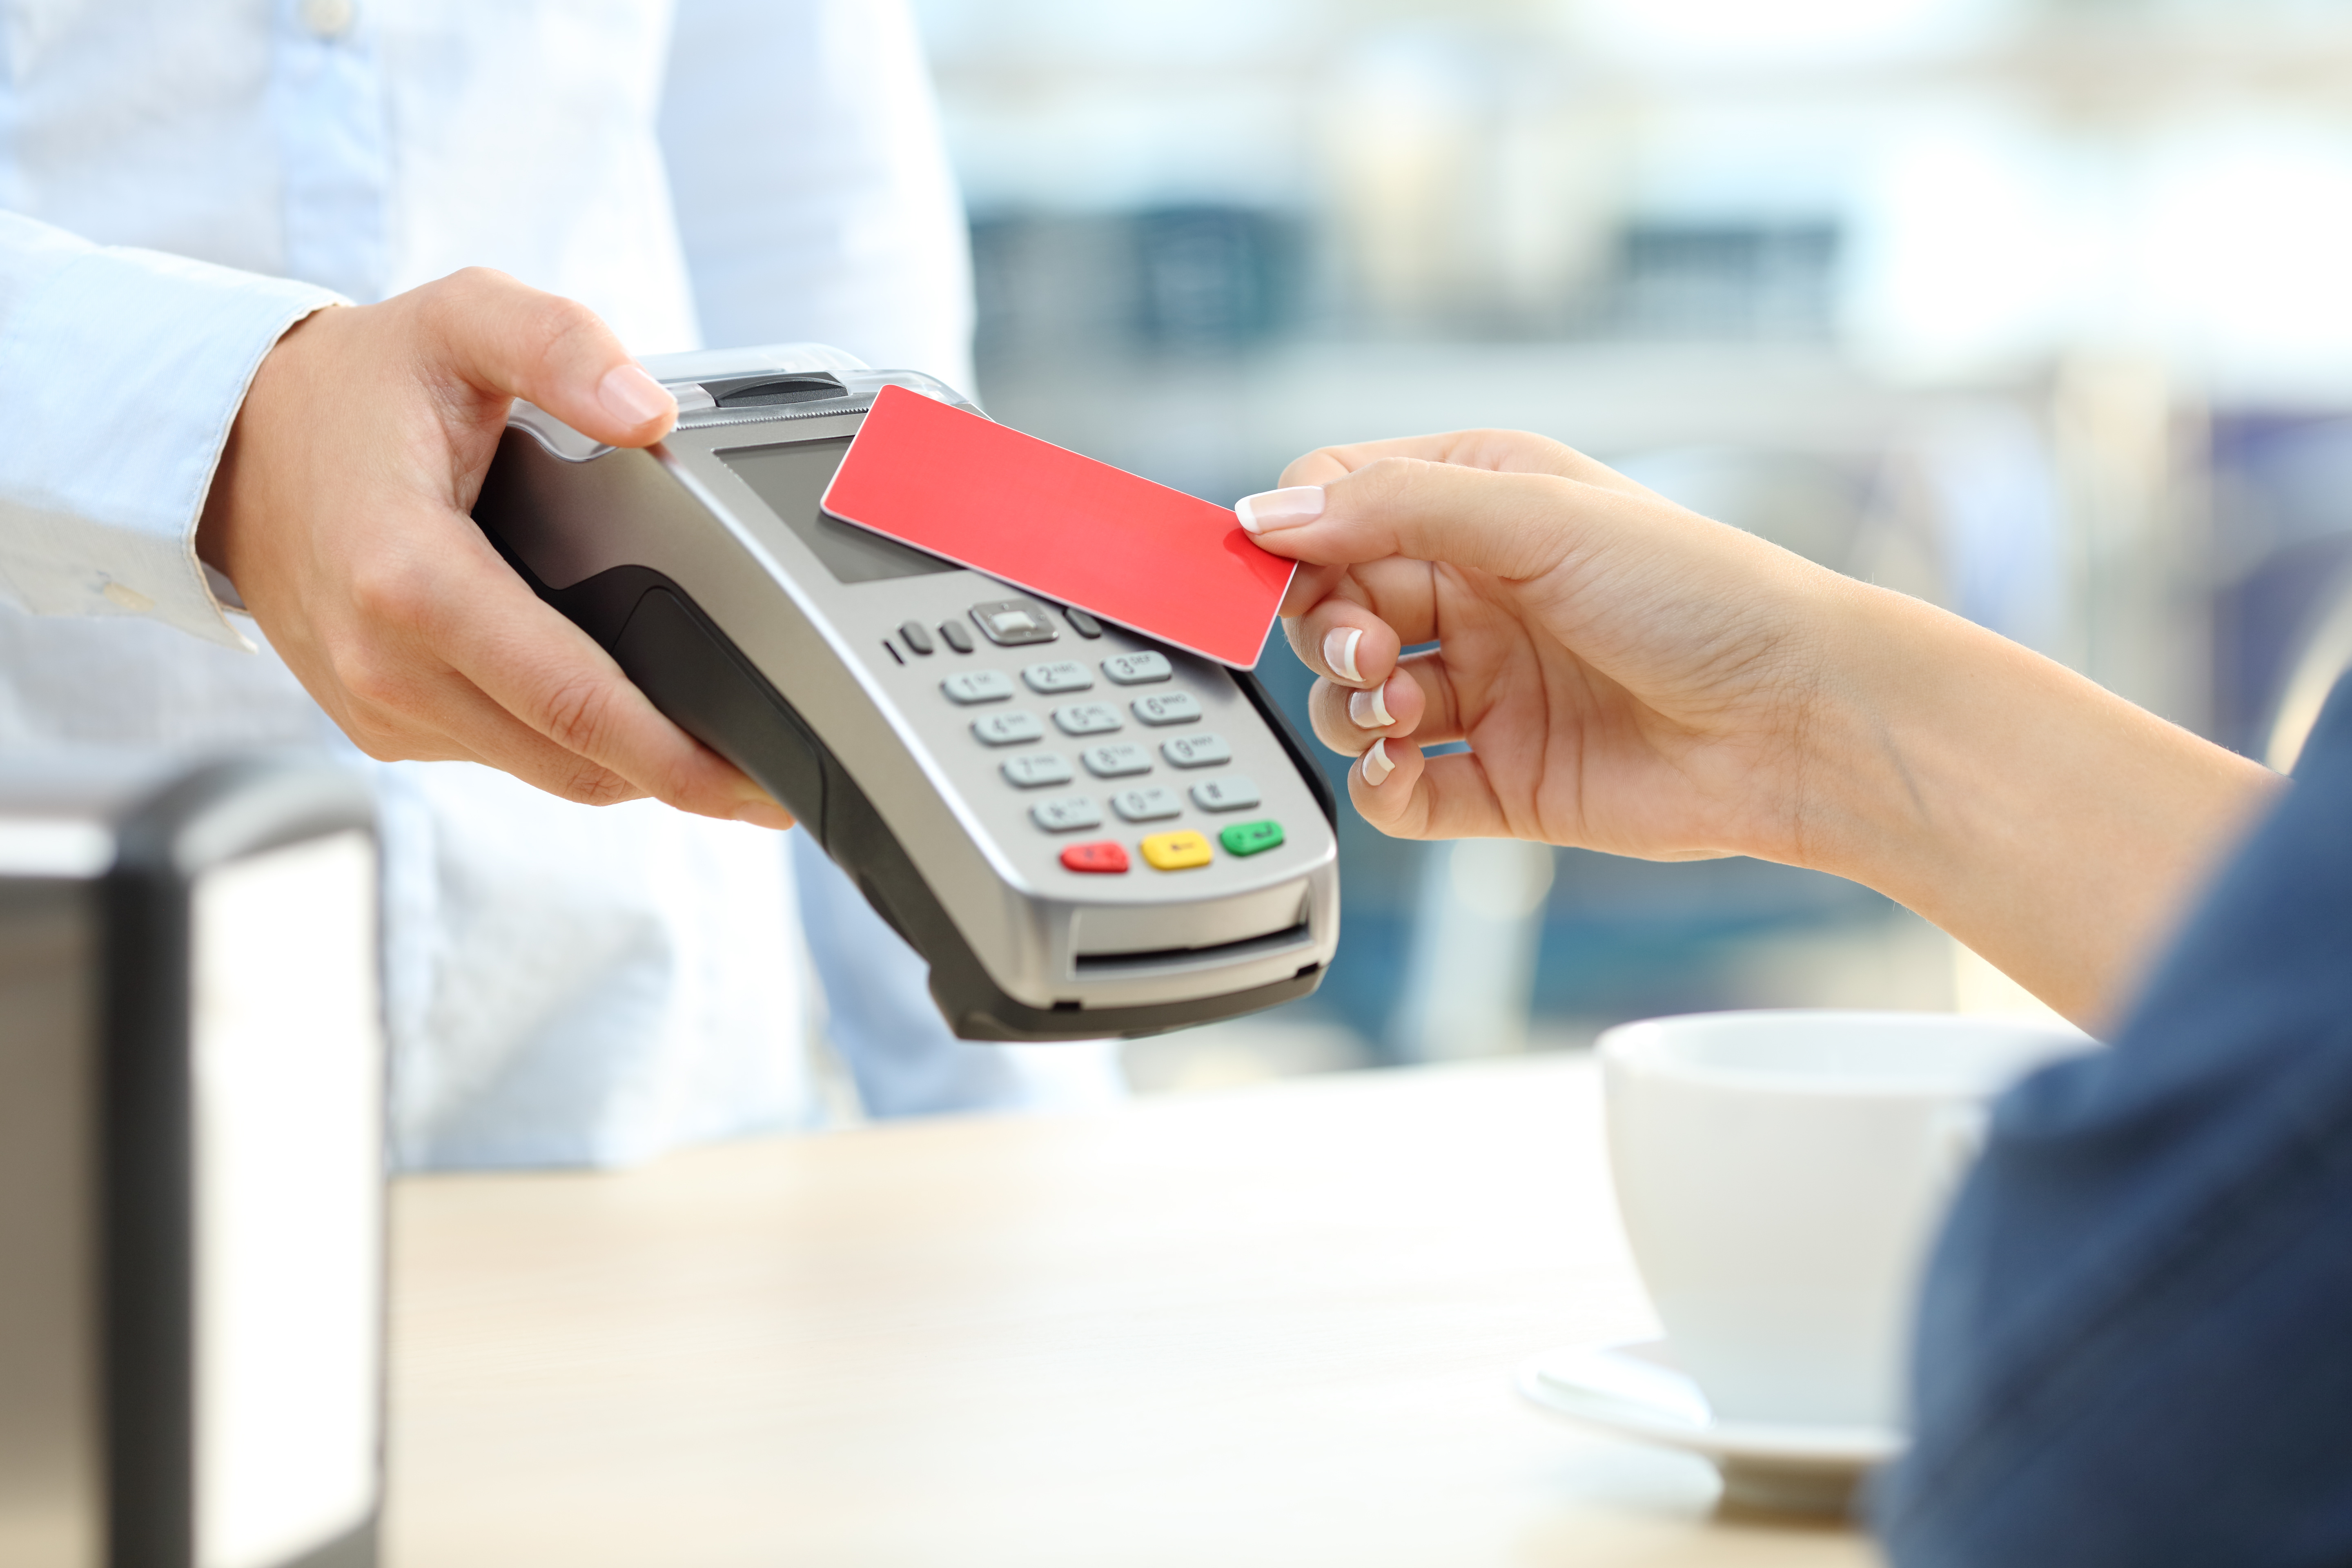 Sondaj CEC Bank: 1 din 2 români foloseşte cardul la achiziţiile online şi 4 din 10 utilizează cardul sau un cont bancar pentru plata facturilor lunare